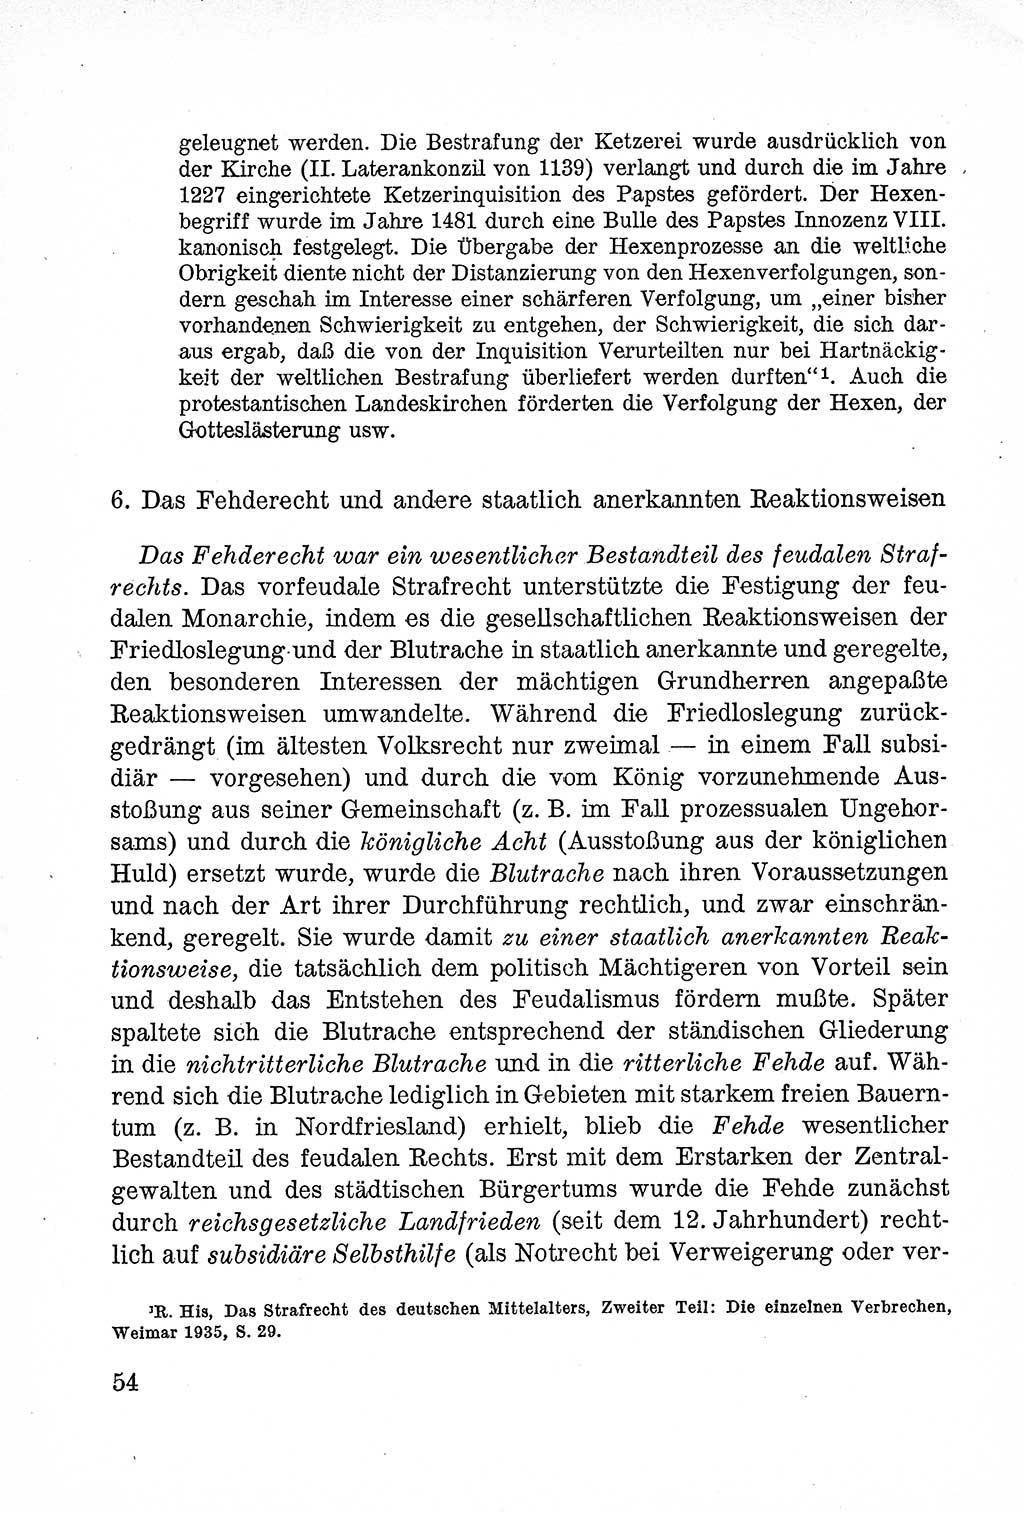 Lehrbuch des Strafrechts der Deutschen Demokratischen Republik (DDR), Allgemeiner Teil 1957, Seite 54 (Lb. Strafr. DDR AT 1957, S. 54)